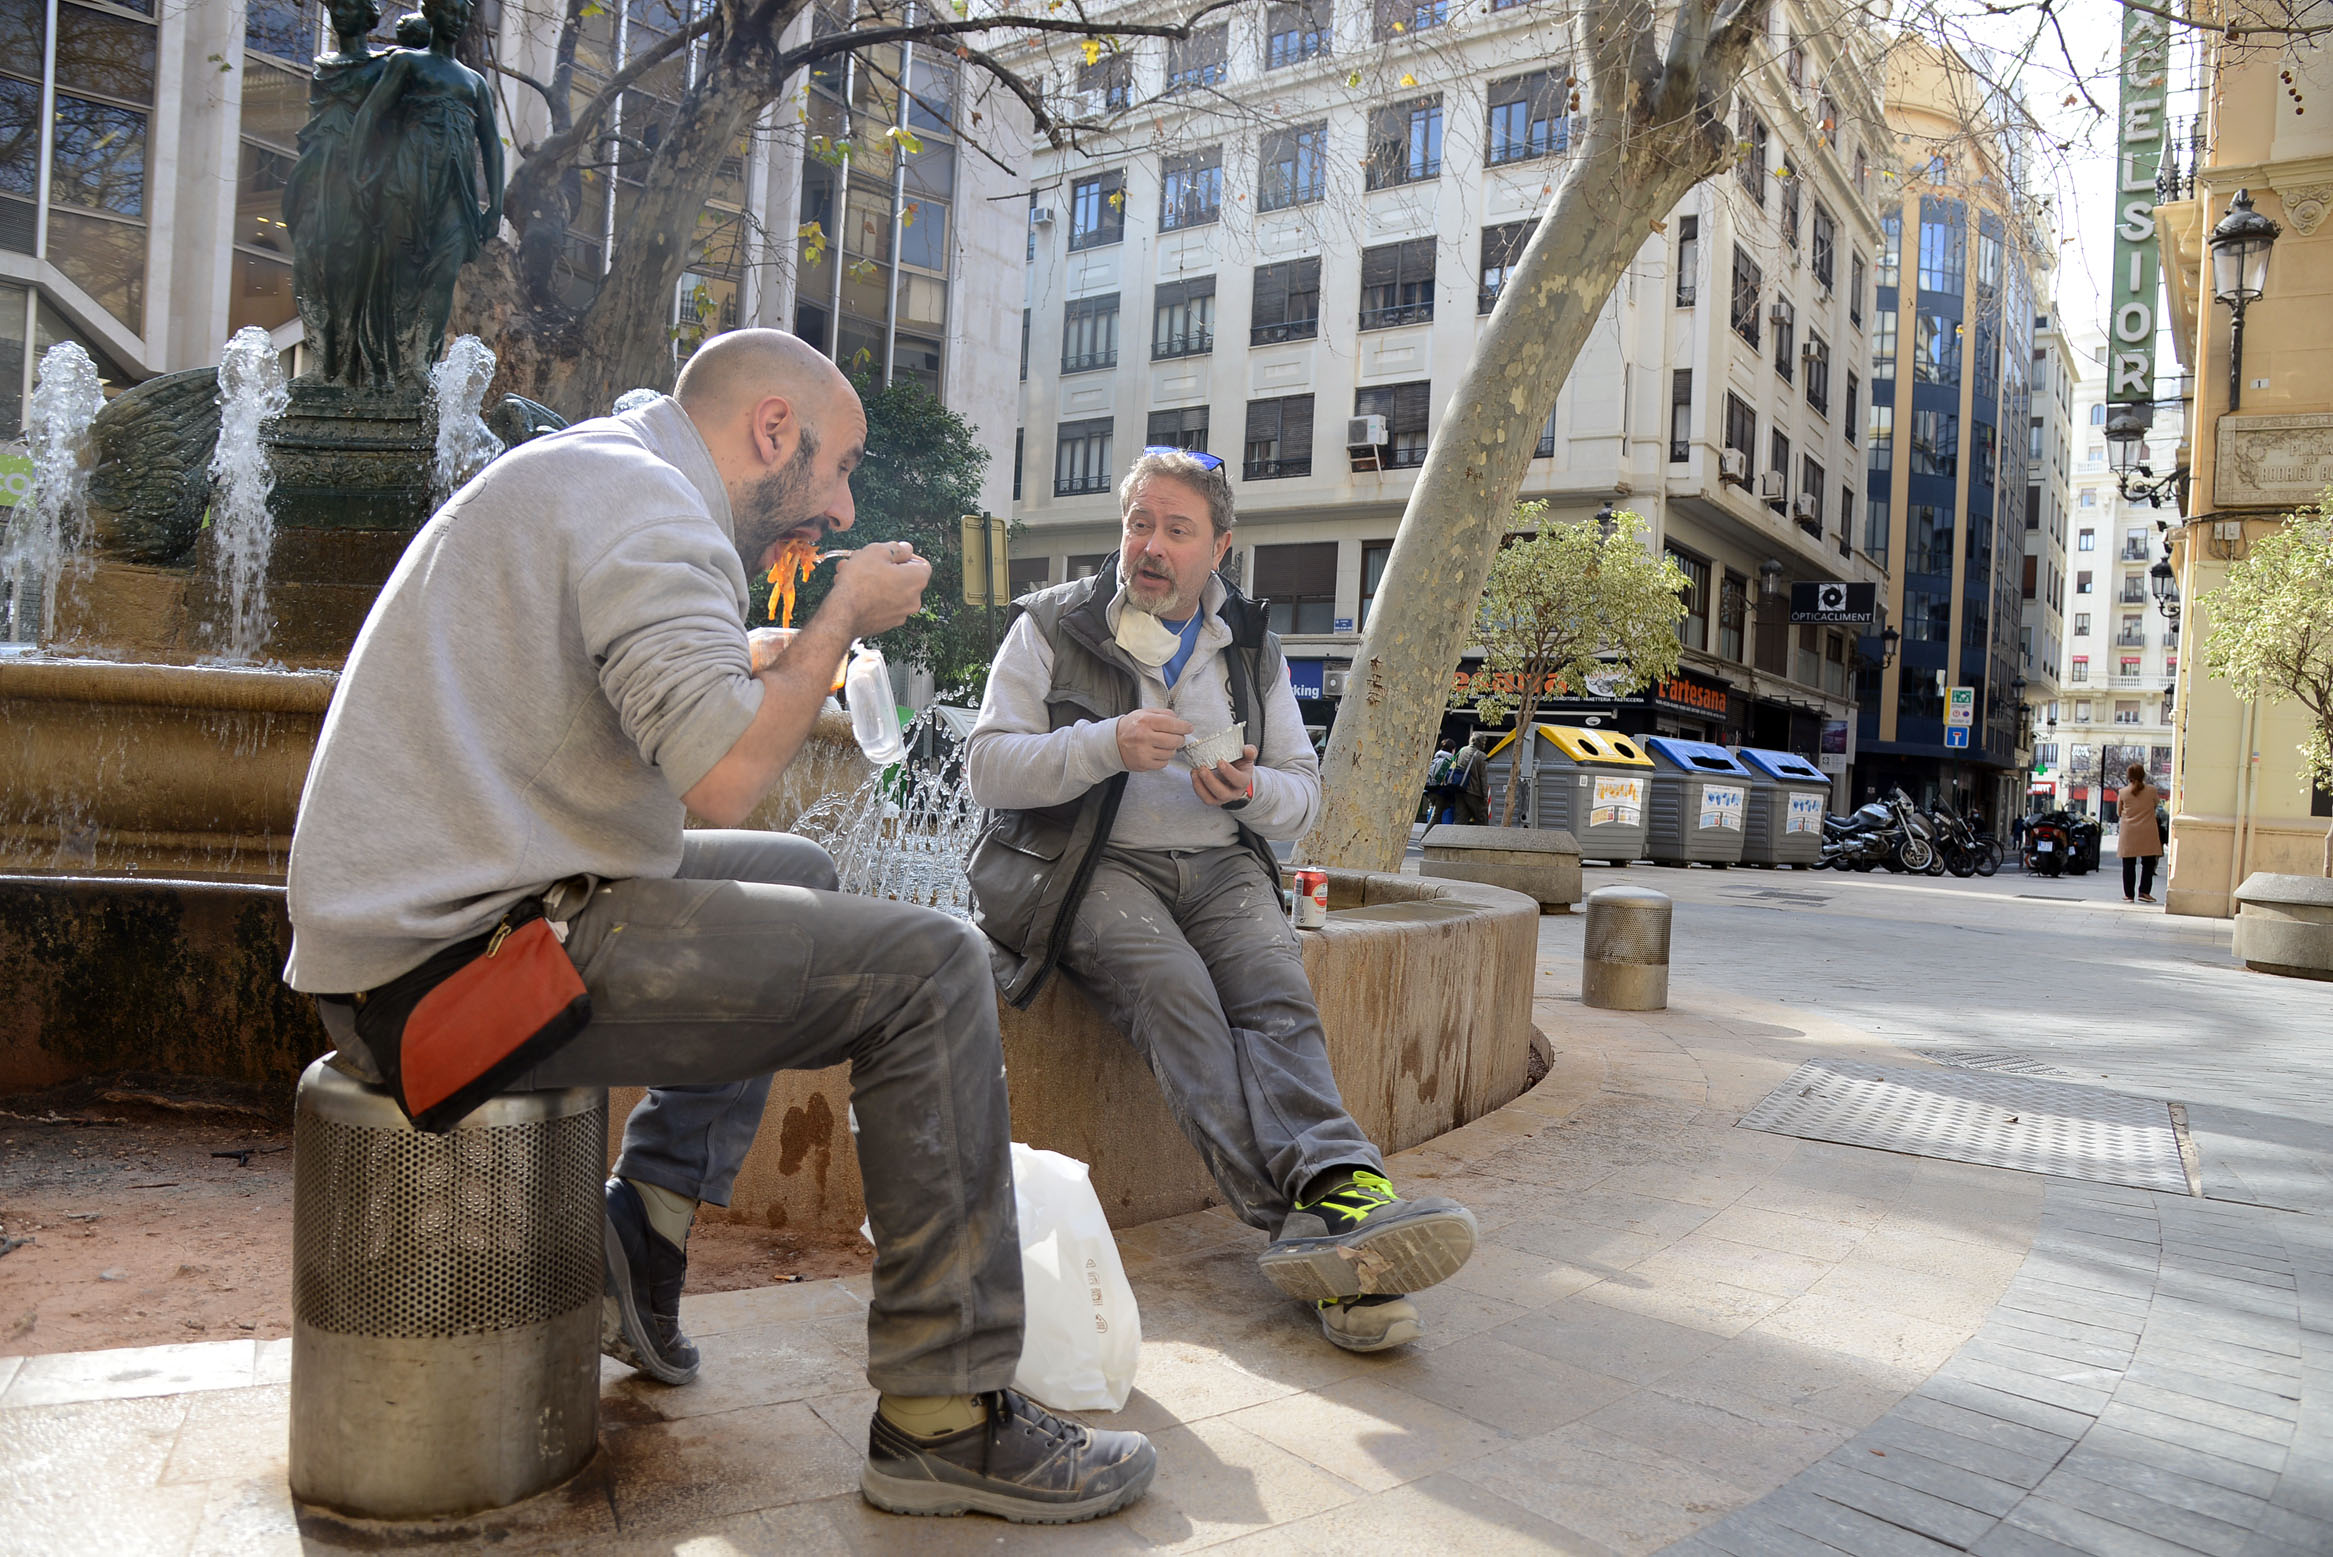 Treballadors dinant al carrer al centre de València, que té tota l'hoteleria tancada (fotografia: Prats i Camps).